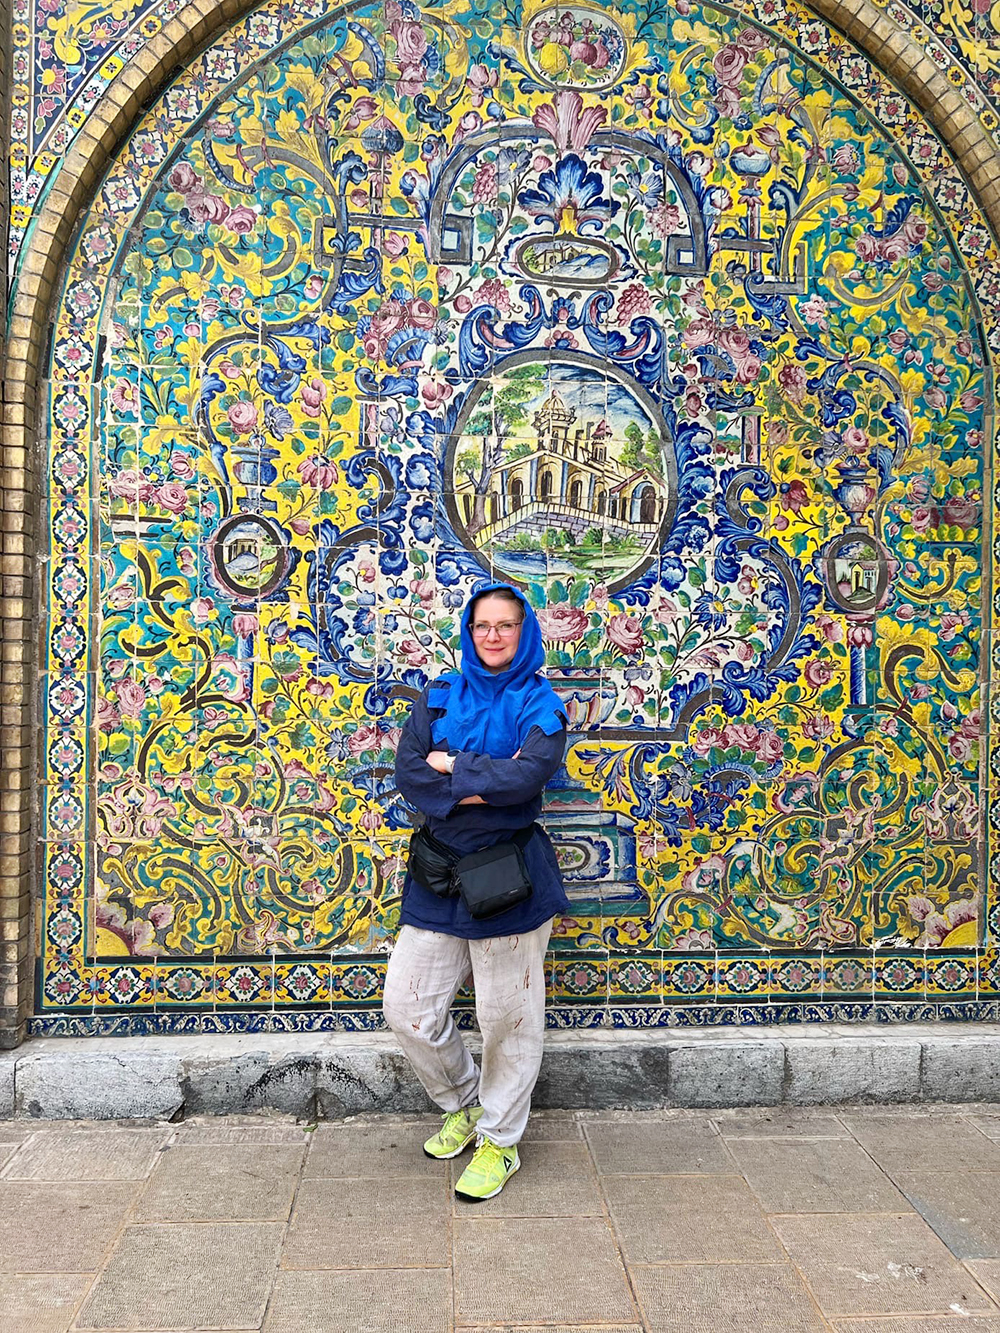 Рада, что выбрала для путешествия именно Иран: будто побывала совершенно в другом мире